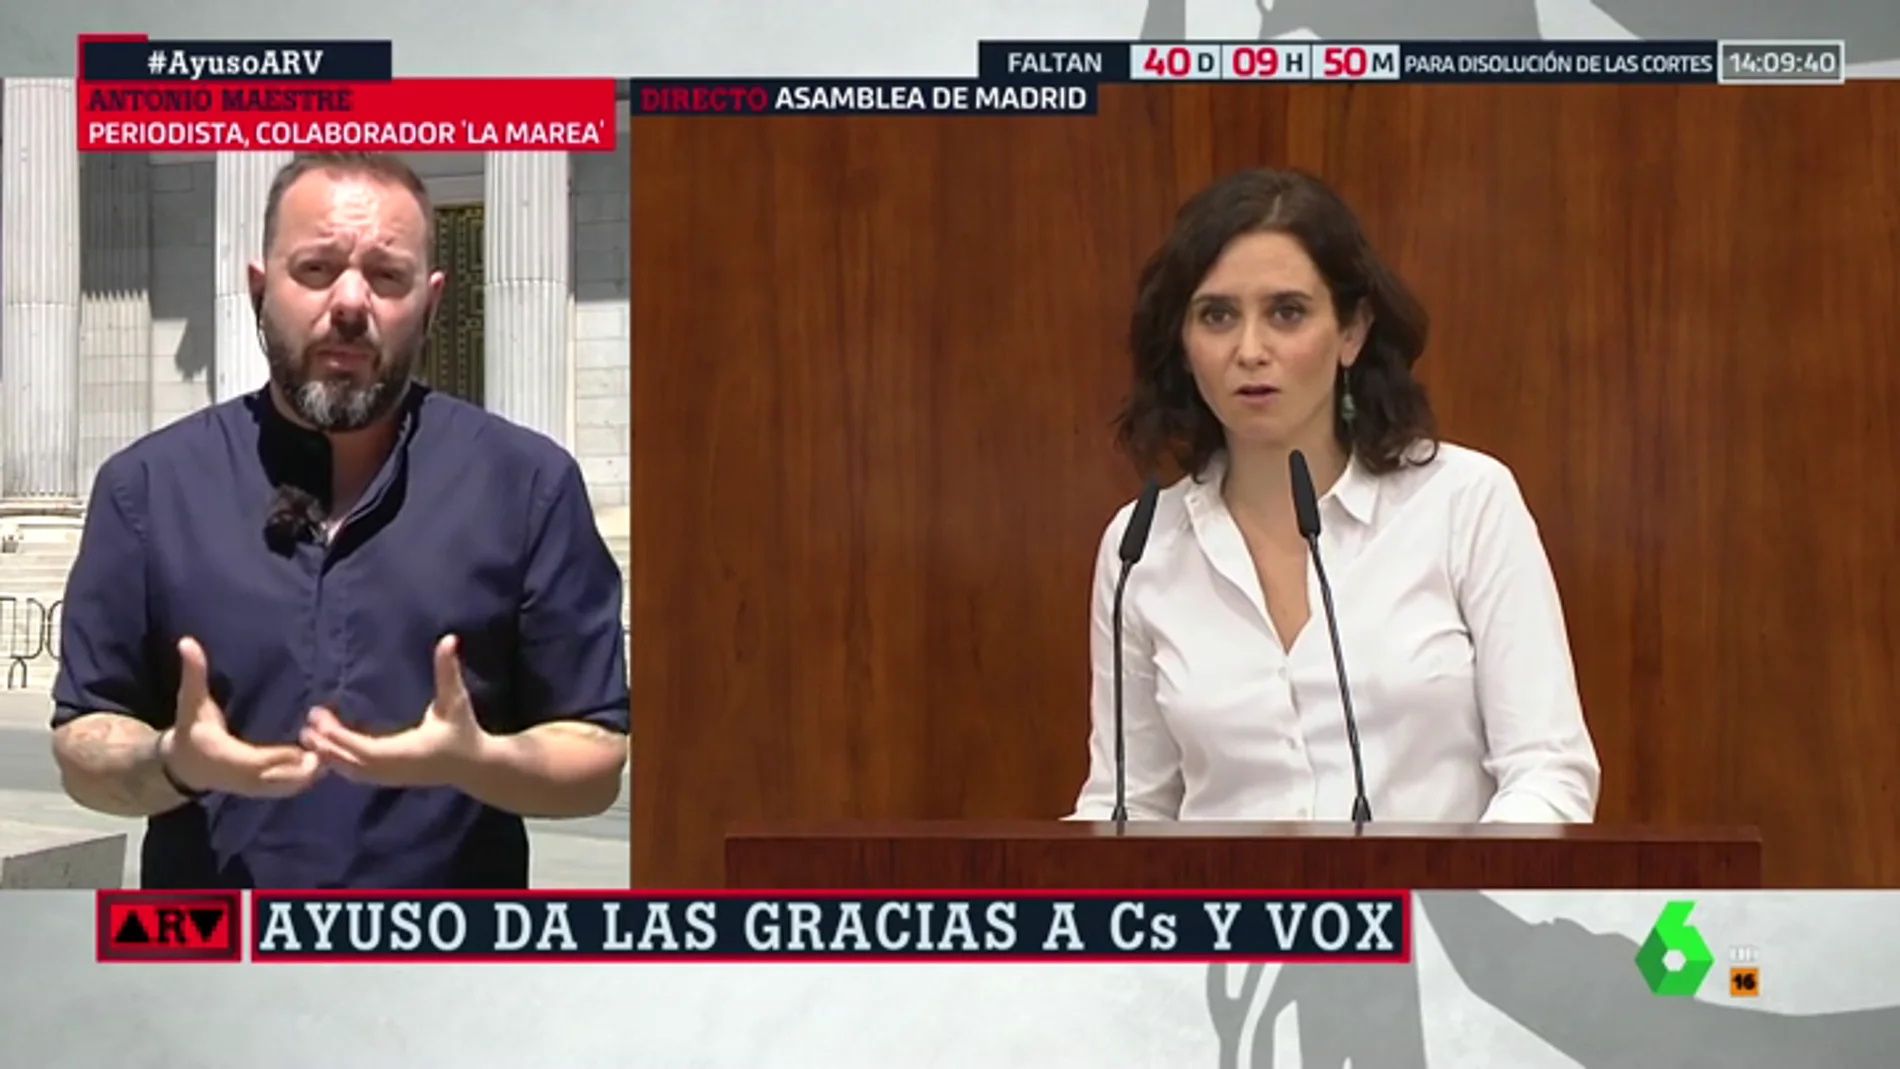 Antonio Maestre: "Ayuso ha asumido las exigencias de Vox y ha convertido el feminismo en misoginia"